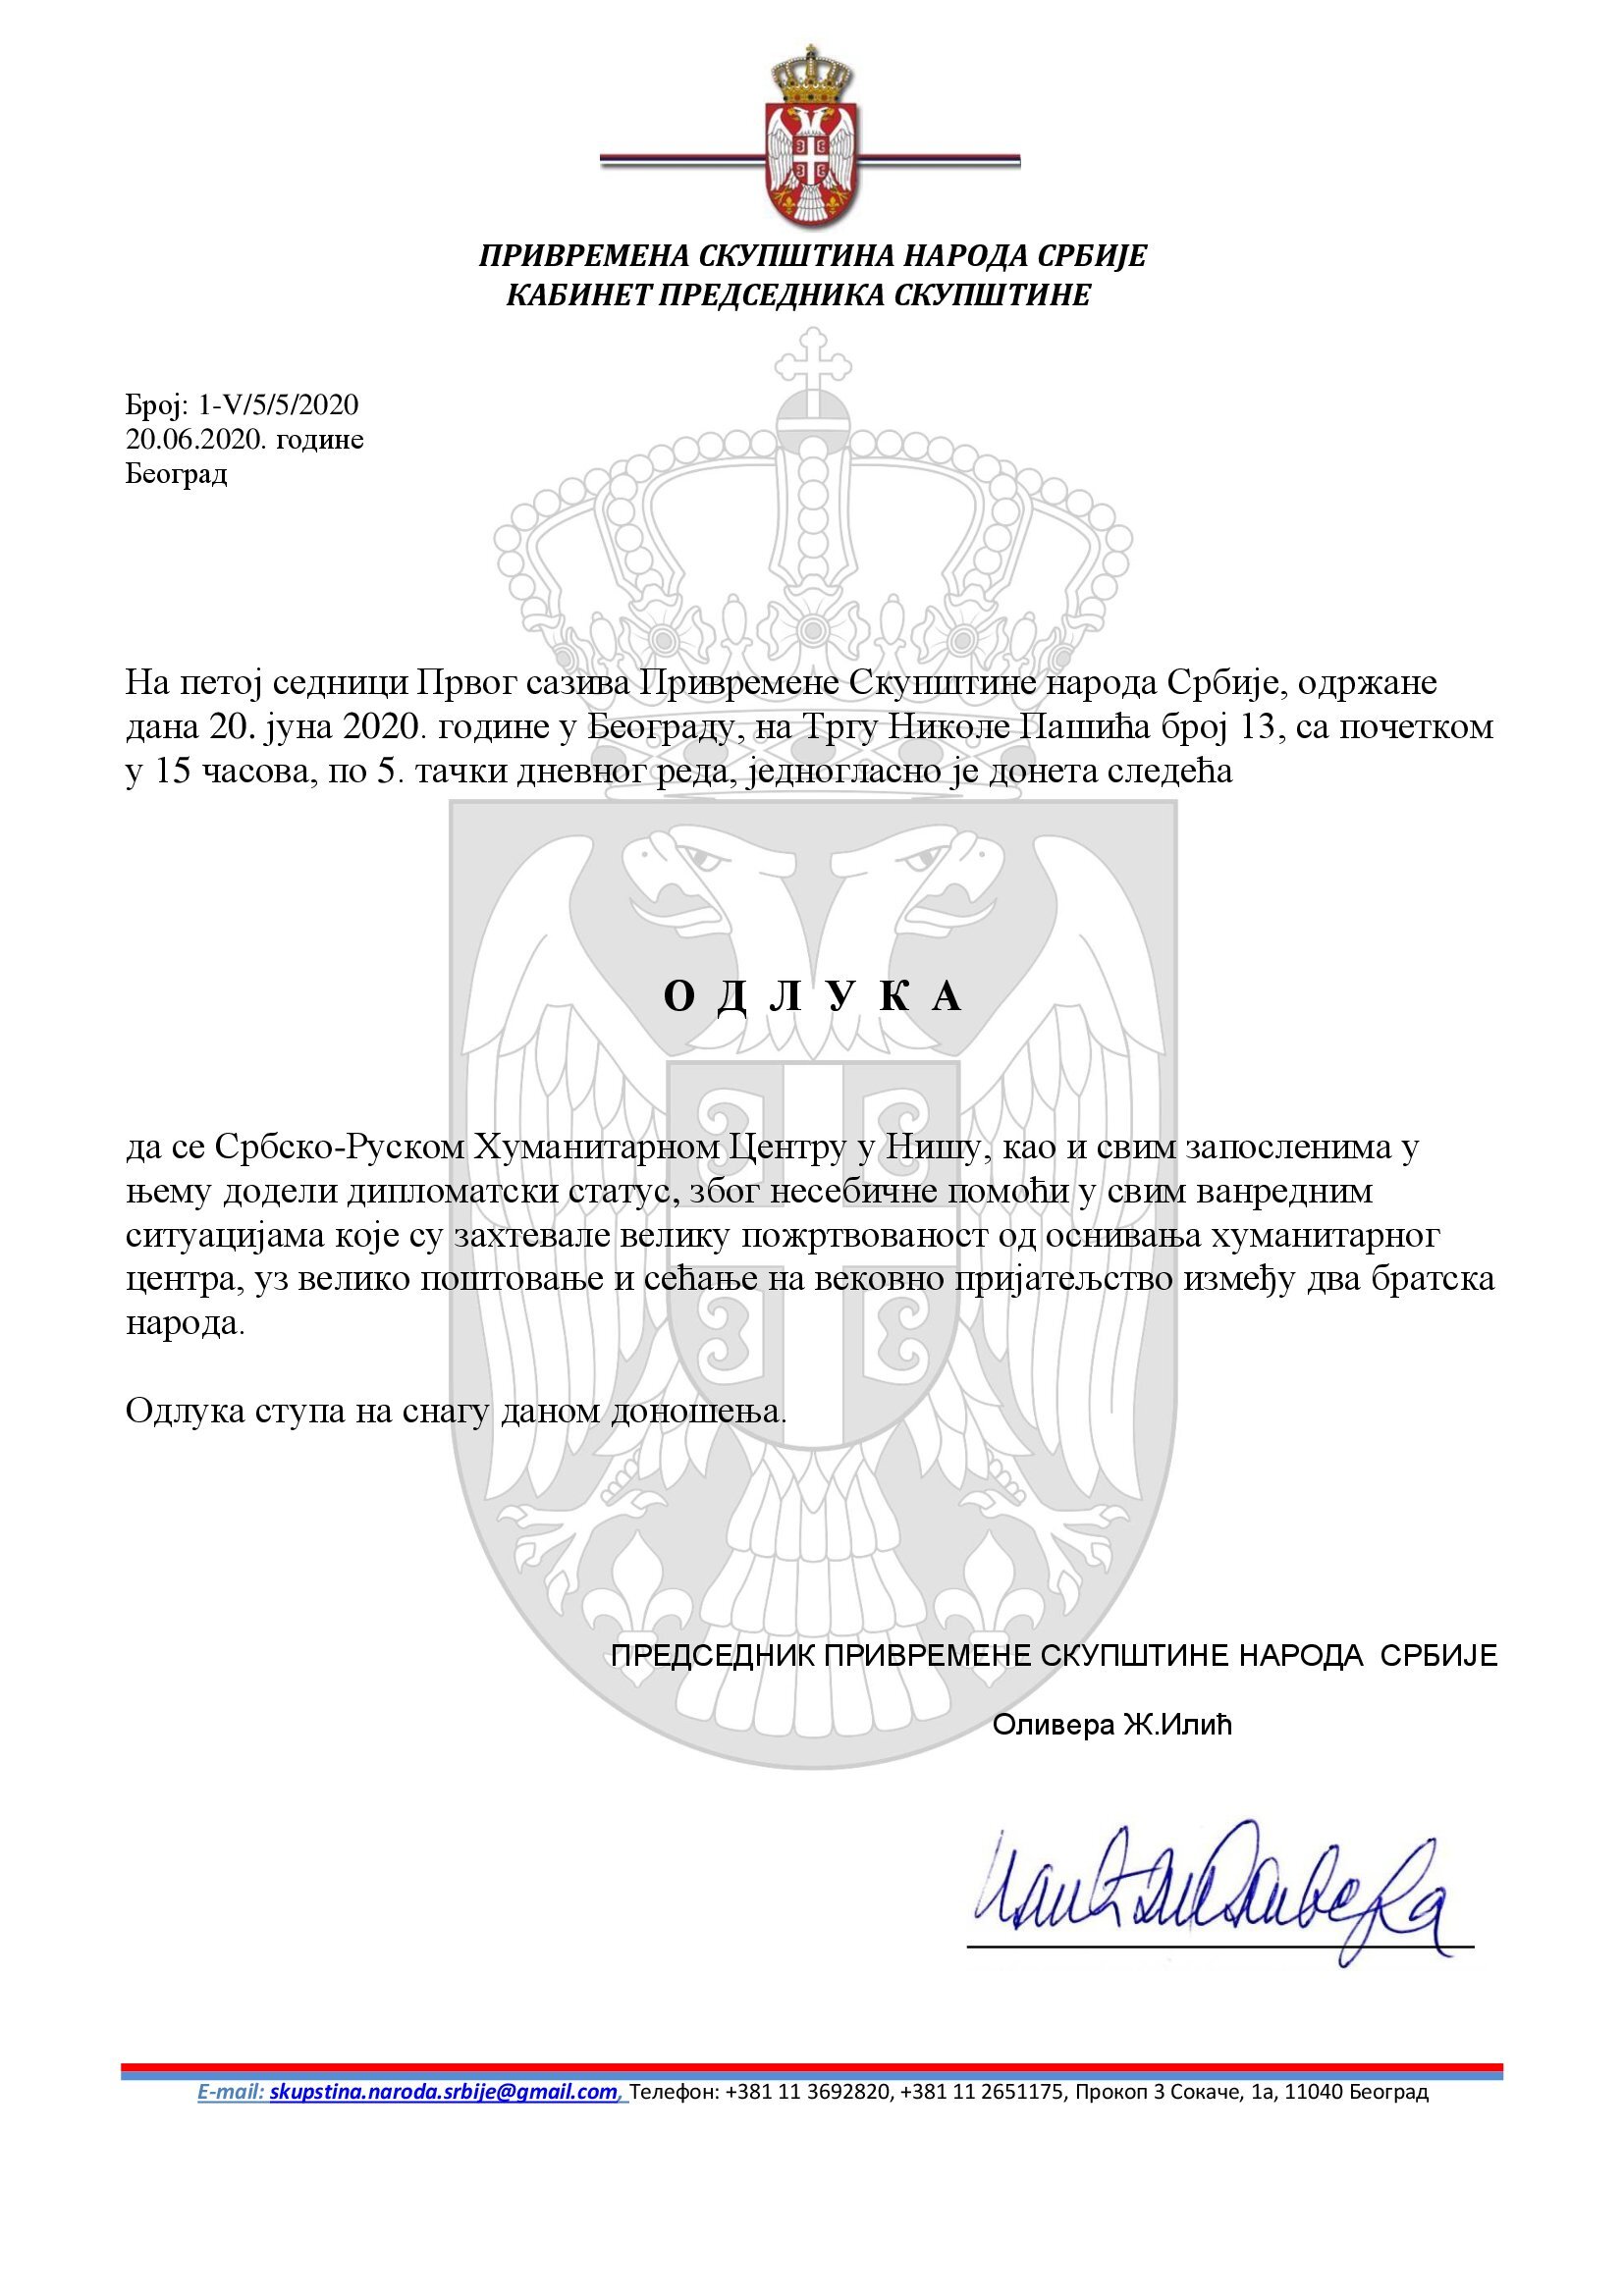 Број 1-V-5-5-2020 Дипломатски статус руски центар у Нишу